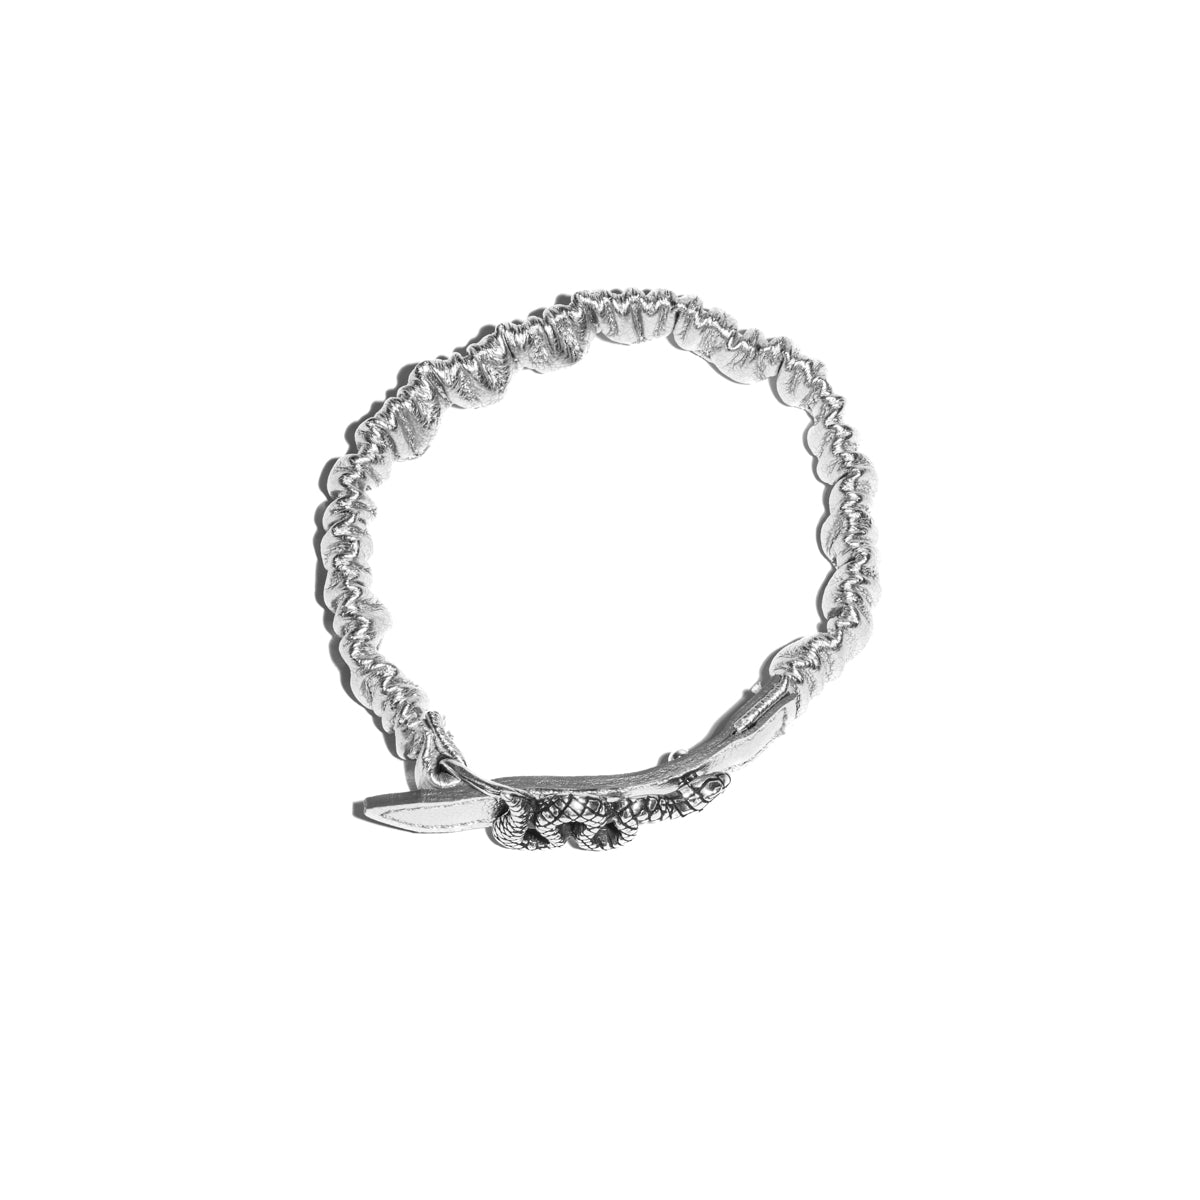 Ariel silver bracelet